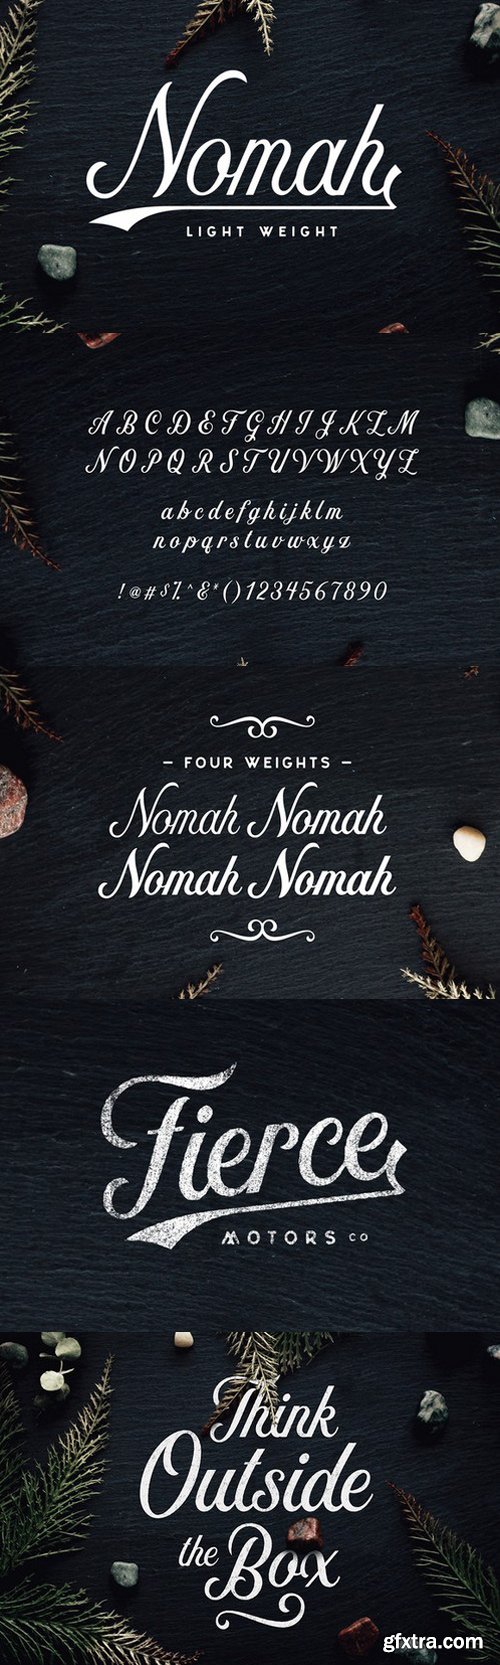 CM - Nomah Light Script Font 566281